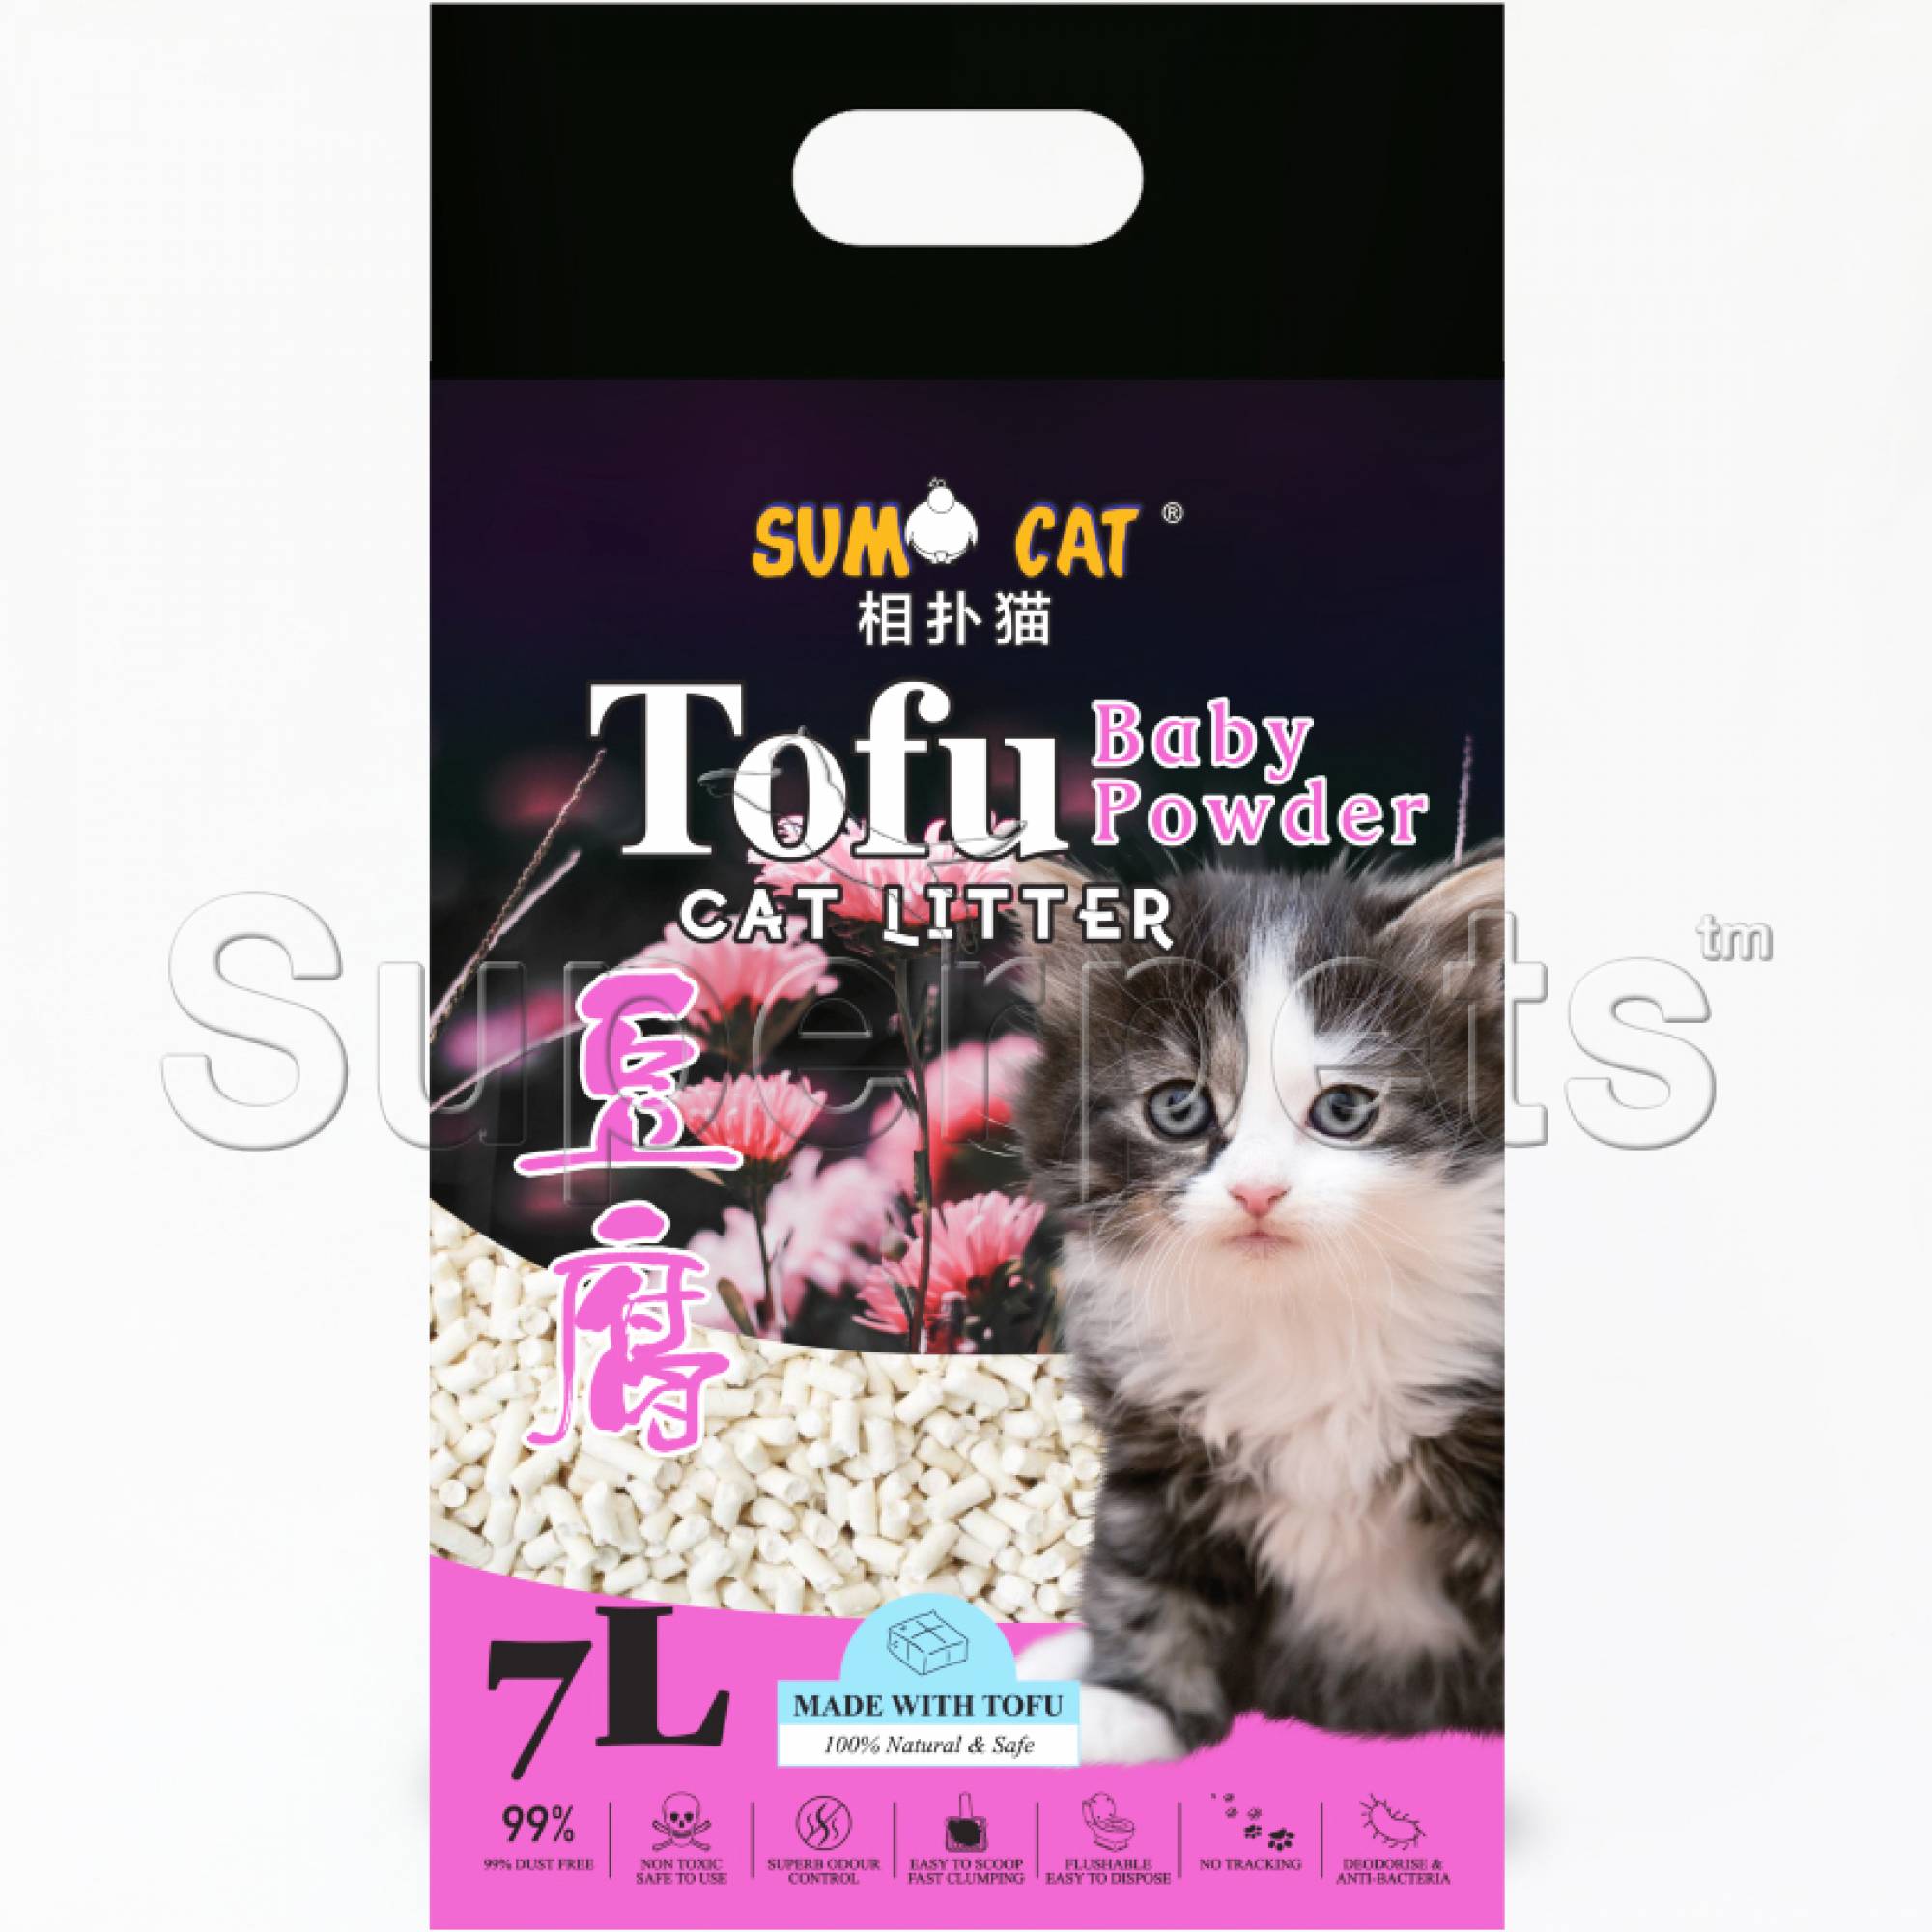 Sumo Cat - Tofu Cat Litter 7L - Baby Powder